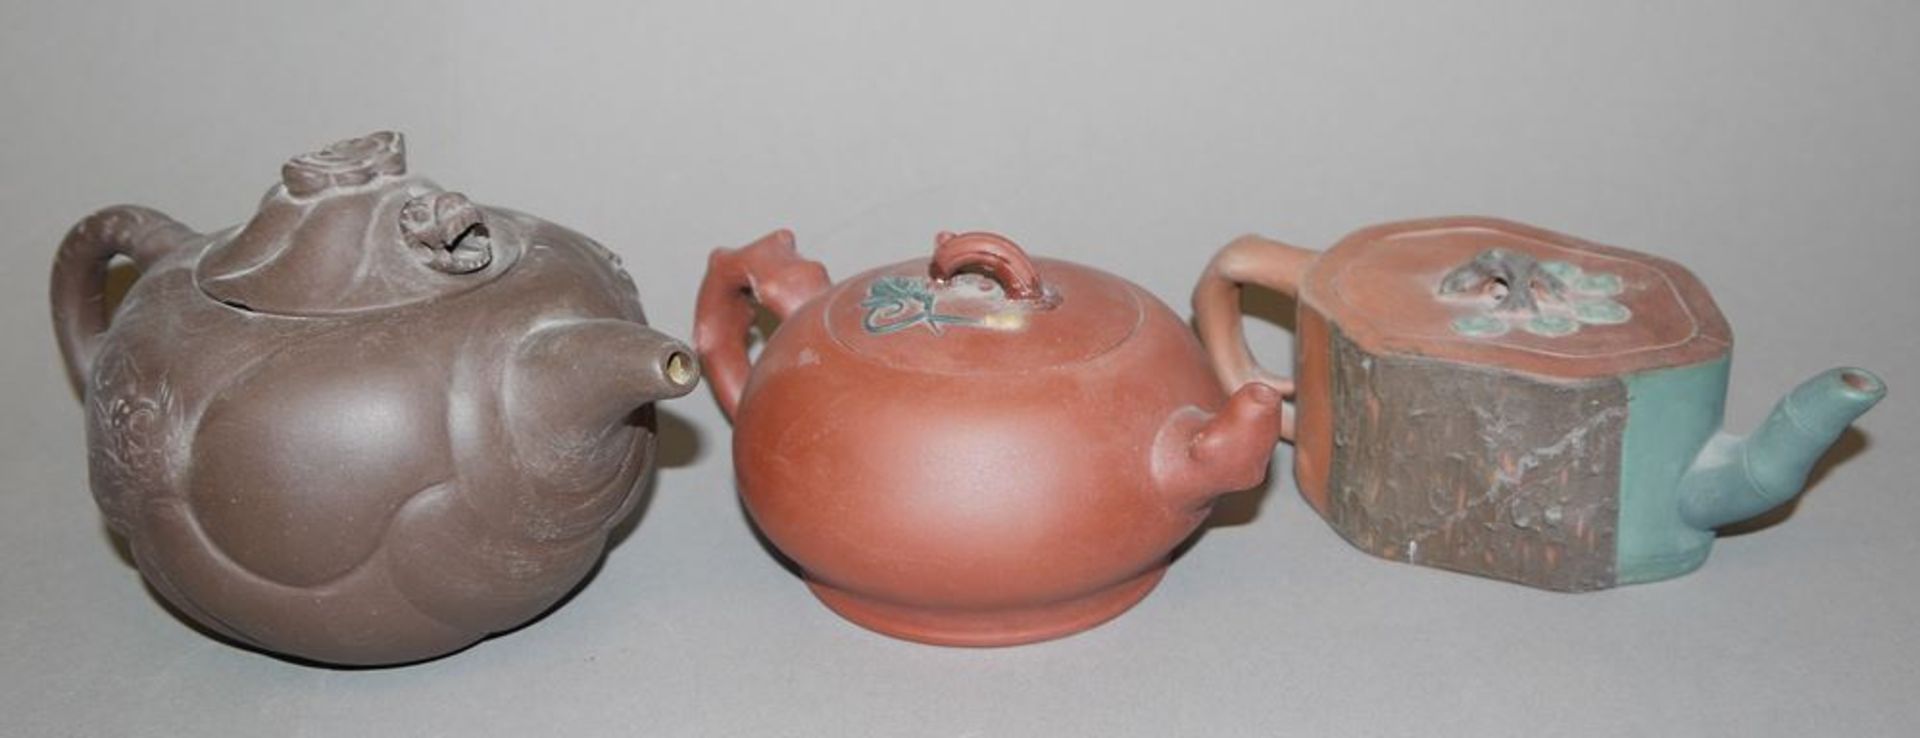 Sechs chinesische Yixing-Teekannen der Qing- und Republik-Zeiten - Image 3 of 3